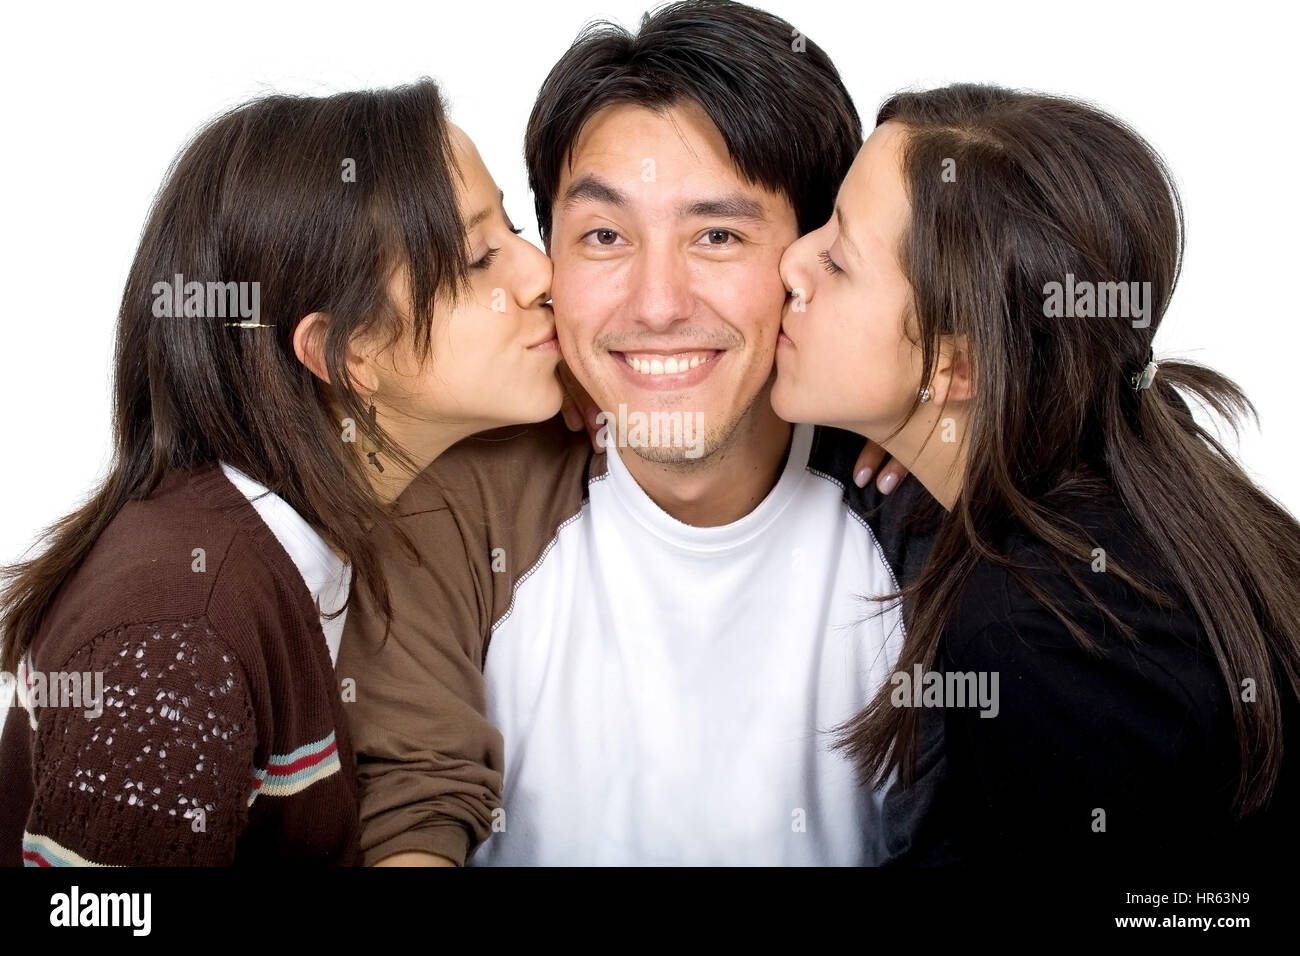 Des jumeaux embrasser un homme sur deux côtés de son visage - isolé sur fond blanc Banque D'Images